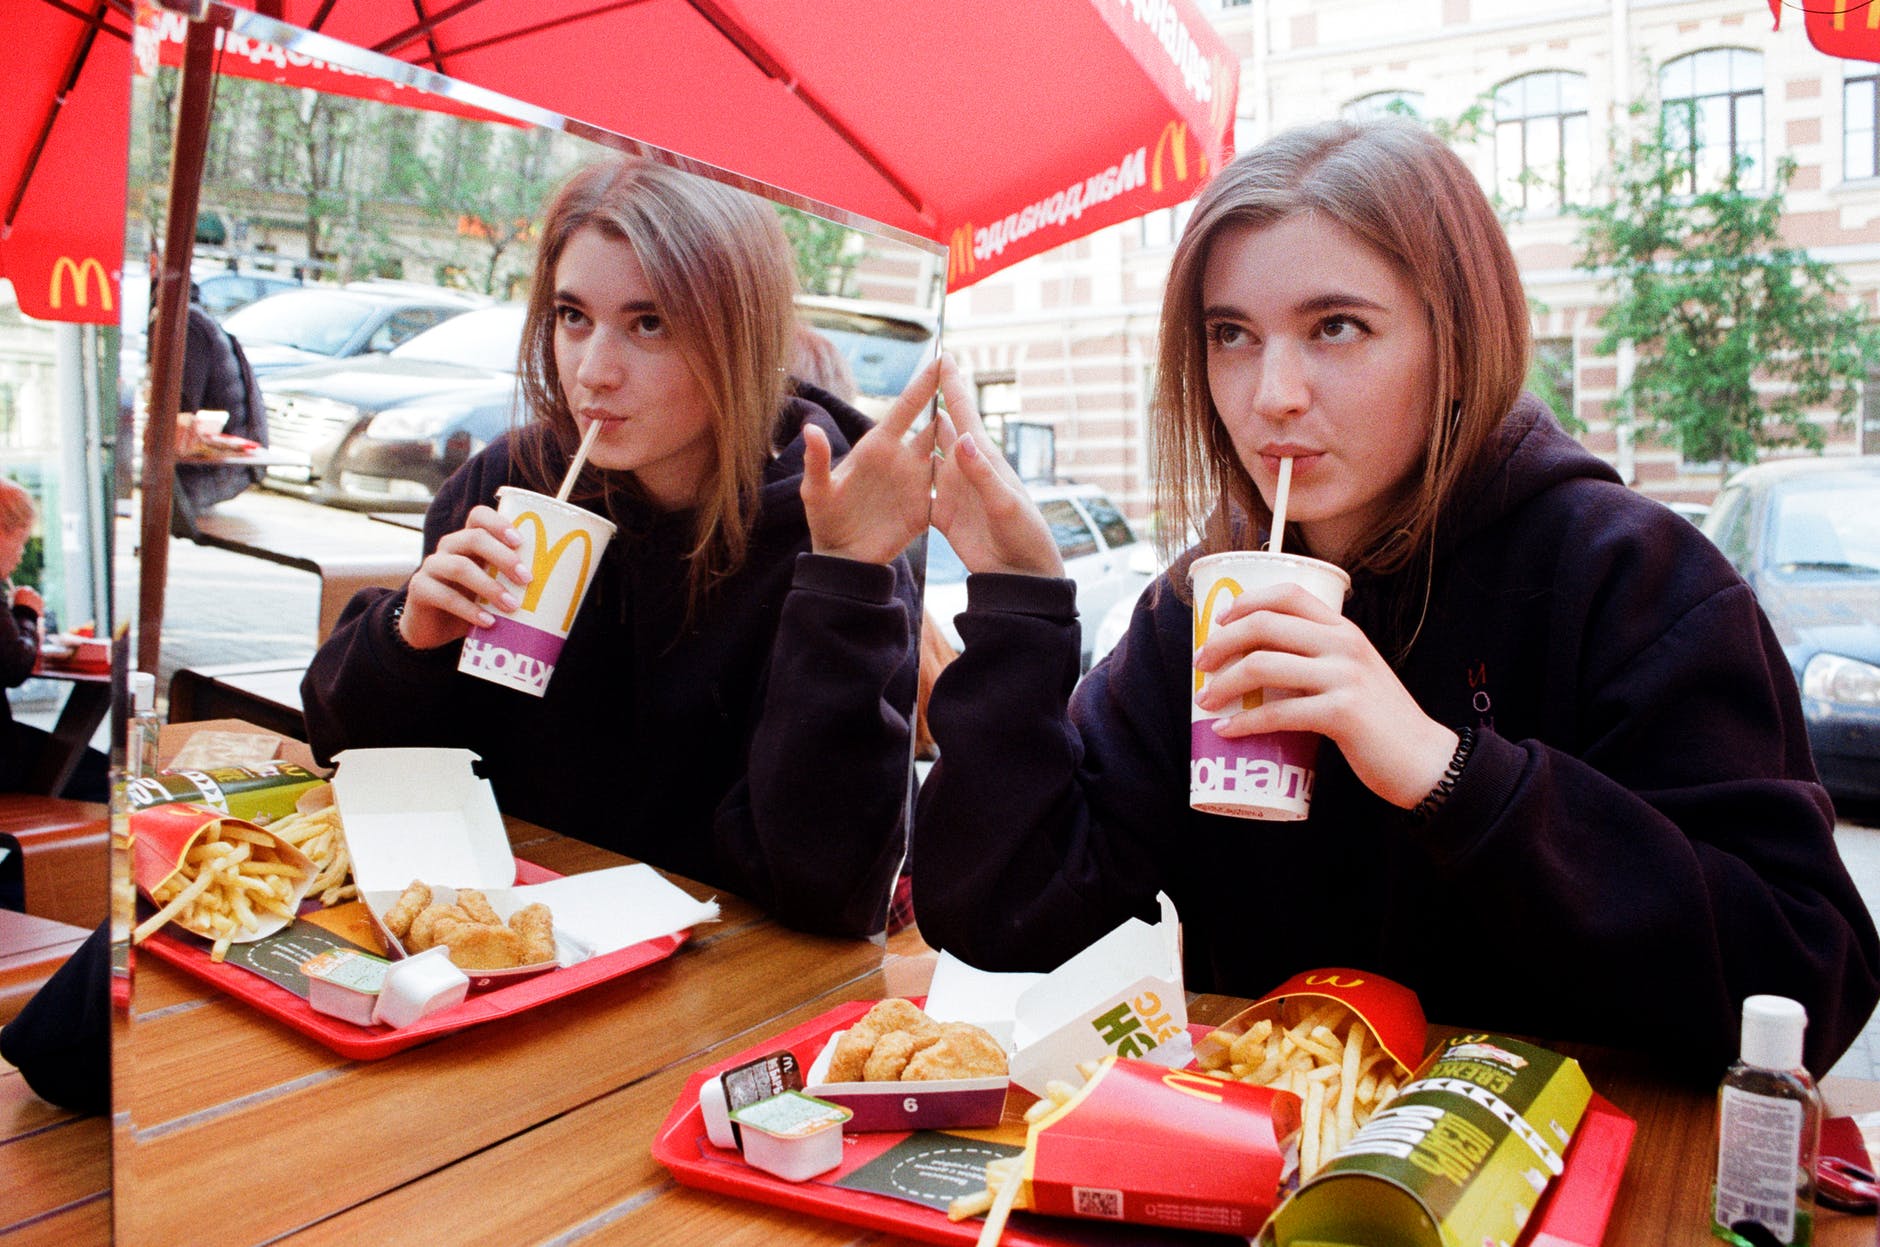 Girl eating in Mcdonalds